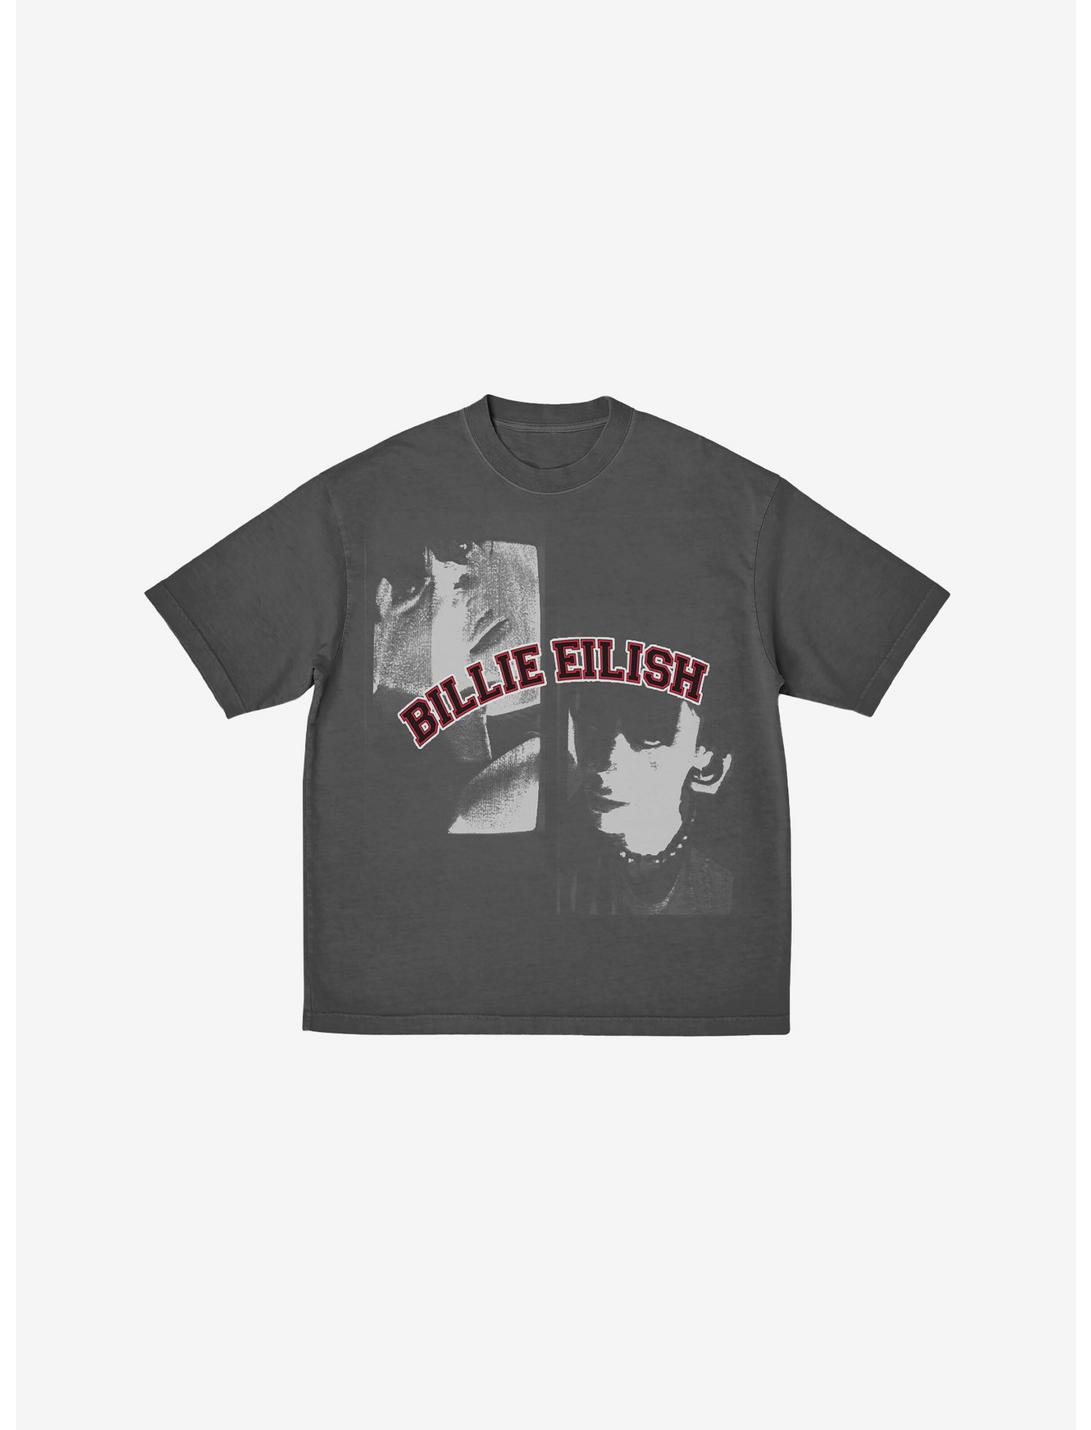 Billie Eilish Double Portrait Grey Boyfriend Fit Girls T-Shirt, CHARCOAL, hi-res